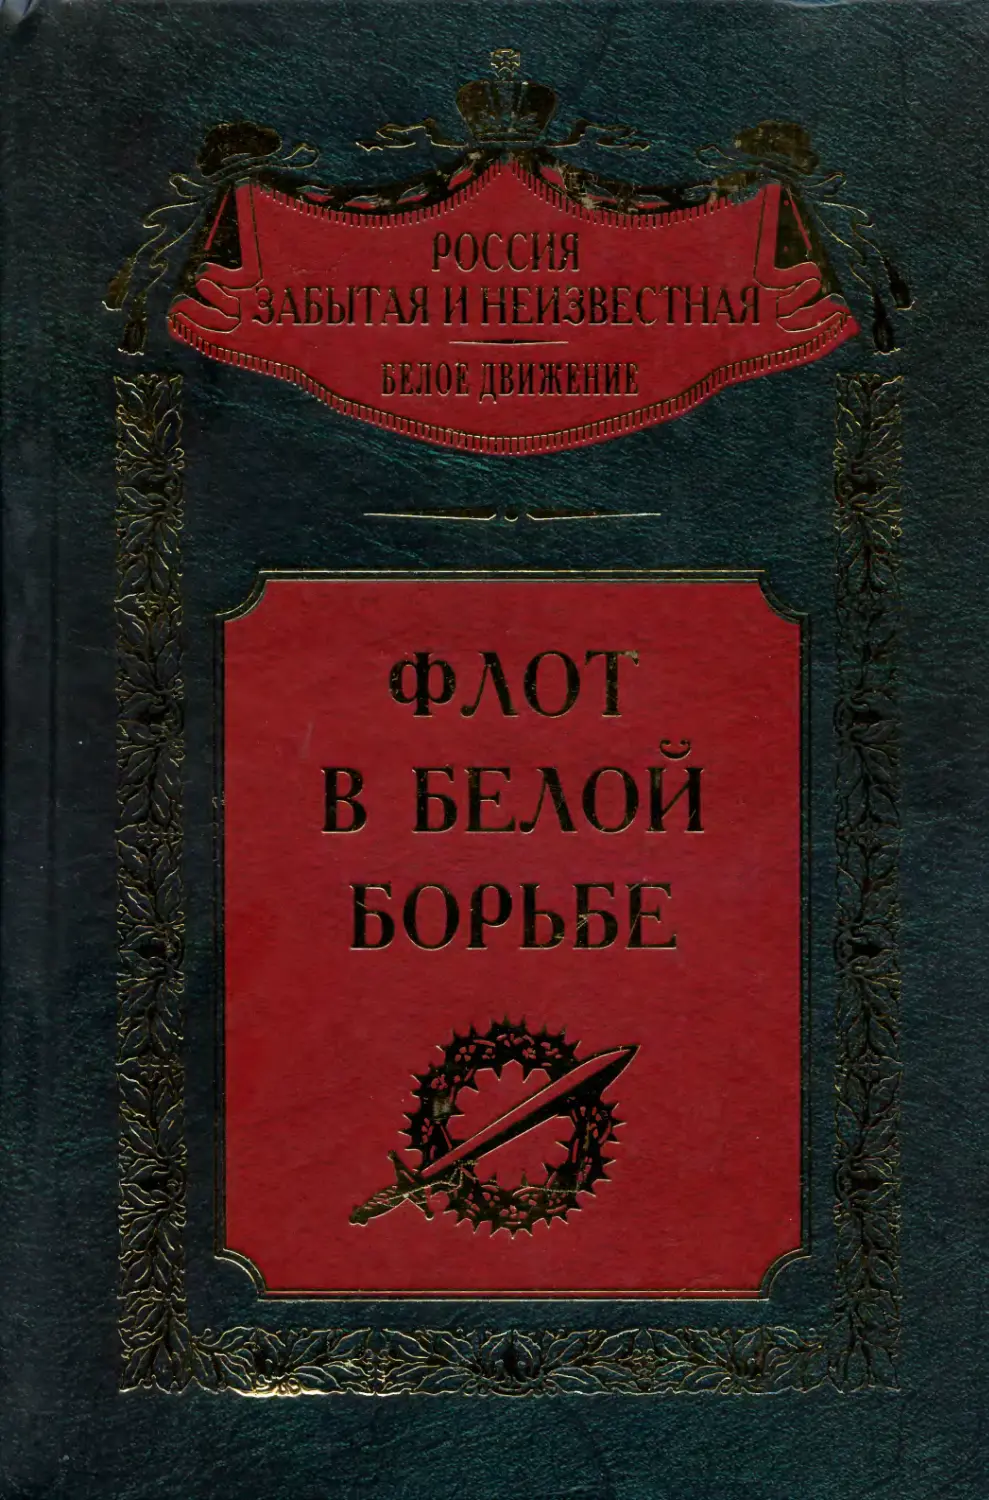 Книги забытые россии